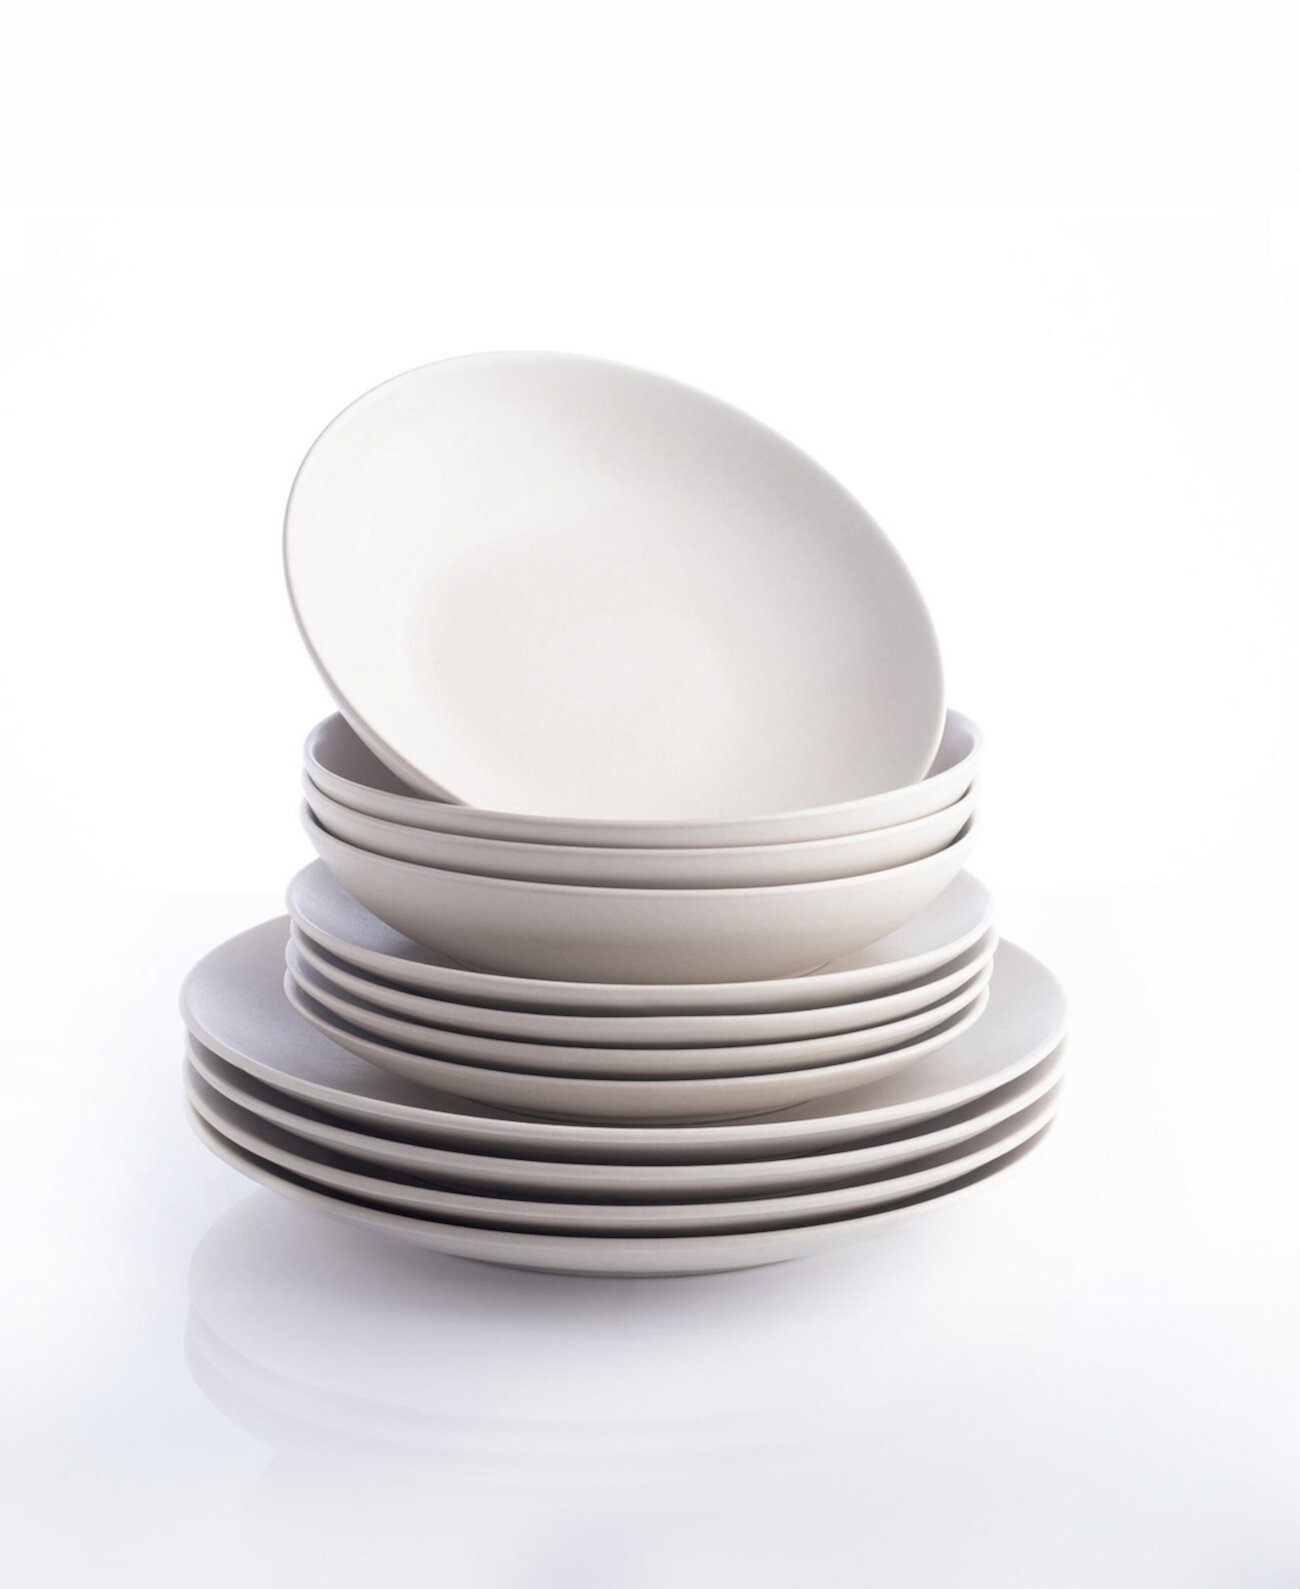 Полный набор столовой посуды Porto by Semplice Stoneware, 12 предметов, сервиз на 4 персоны Stone Lain